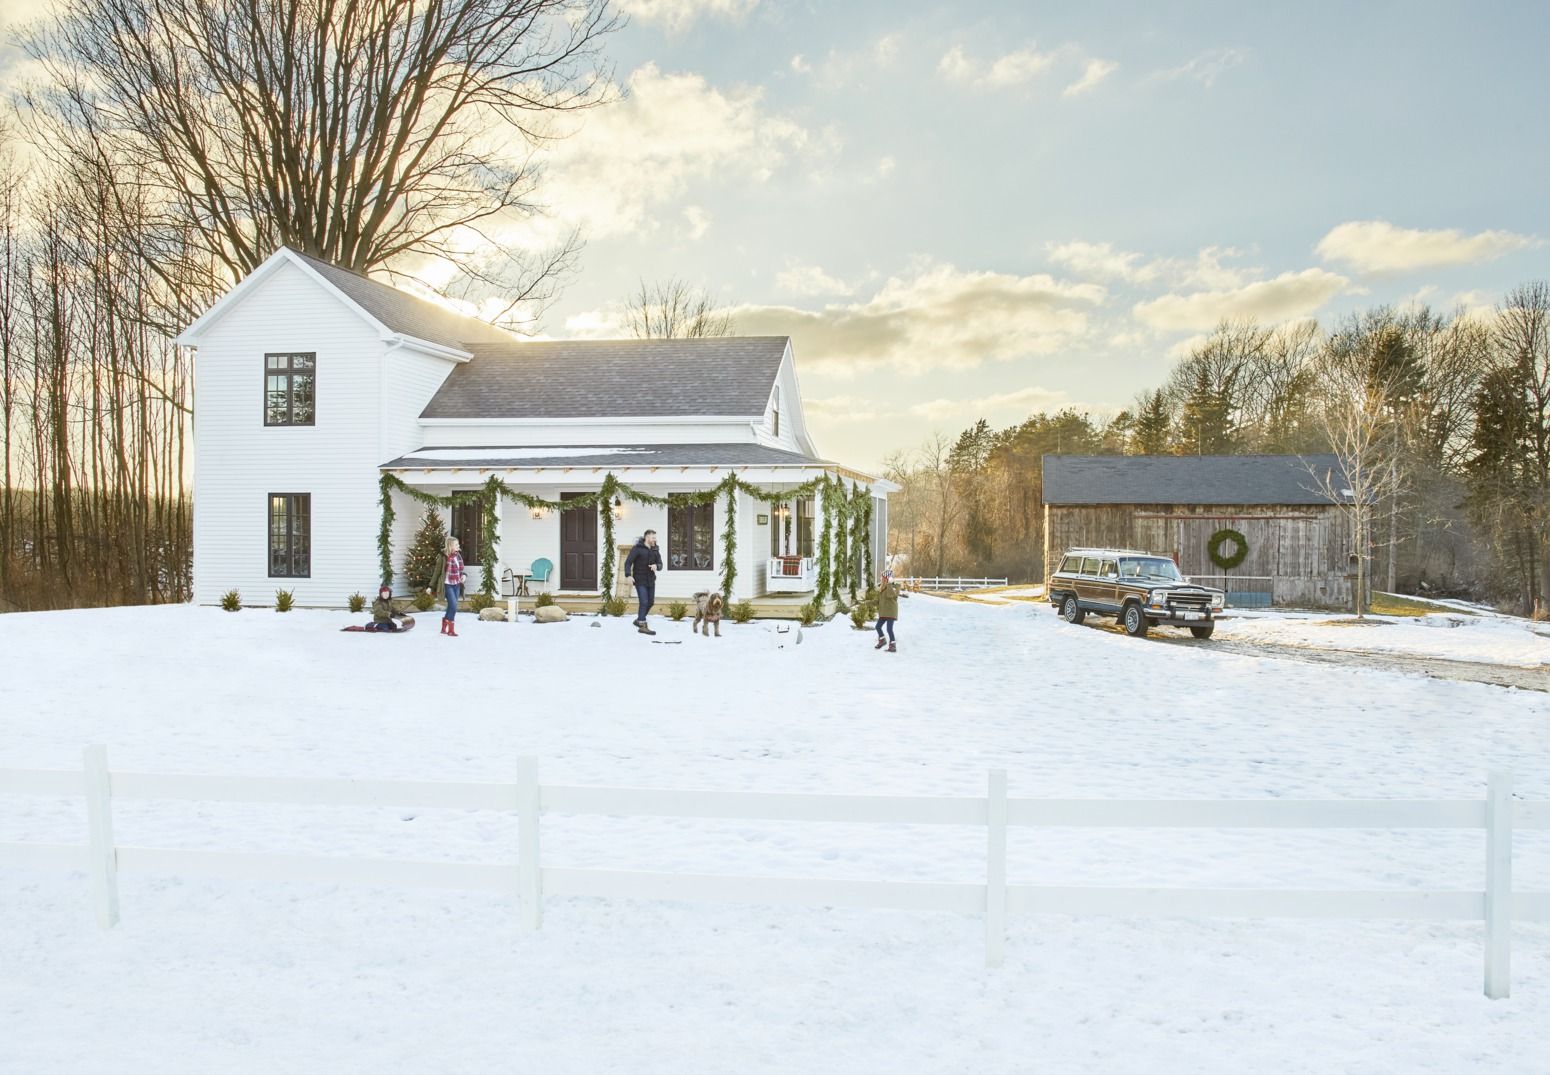 New CHURCH HOUSE Christmas Ornament Decor Farmhouse Country Rustic Farm Snow 